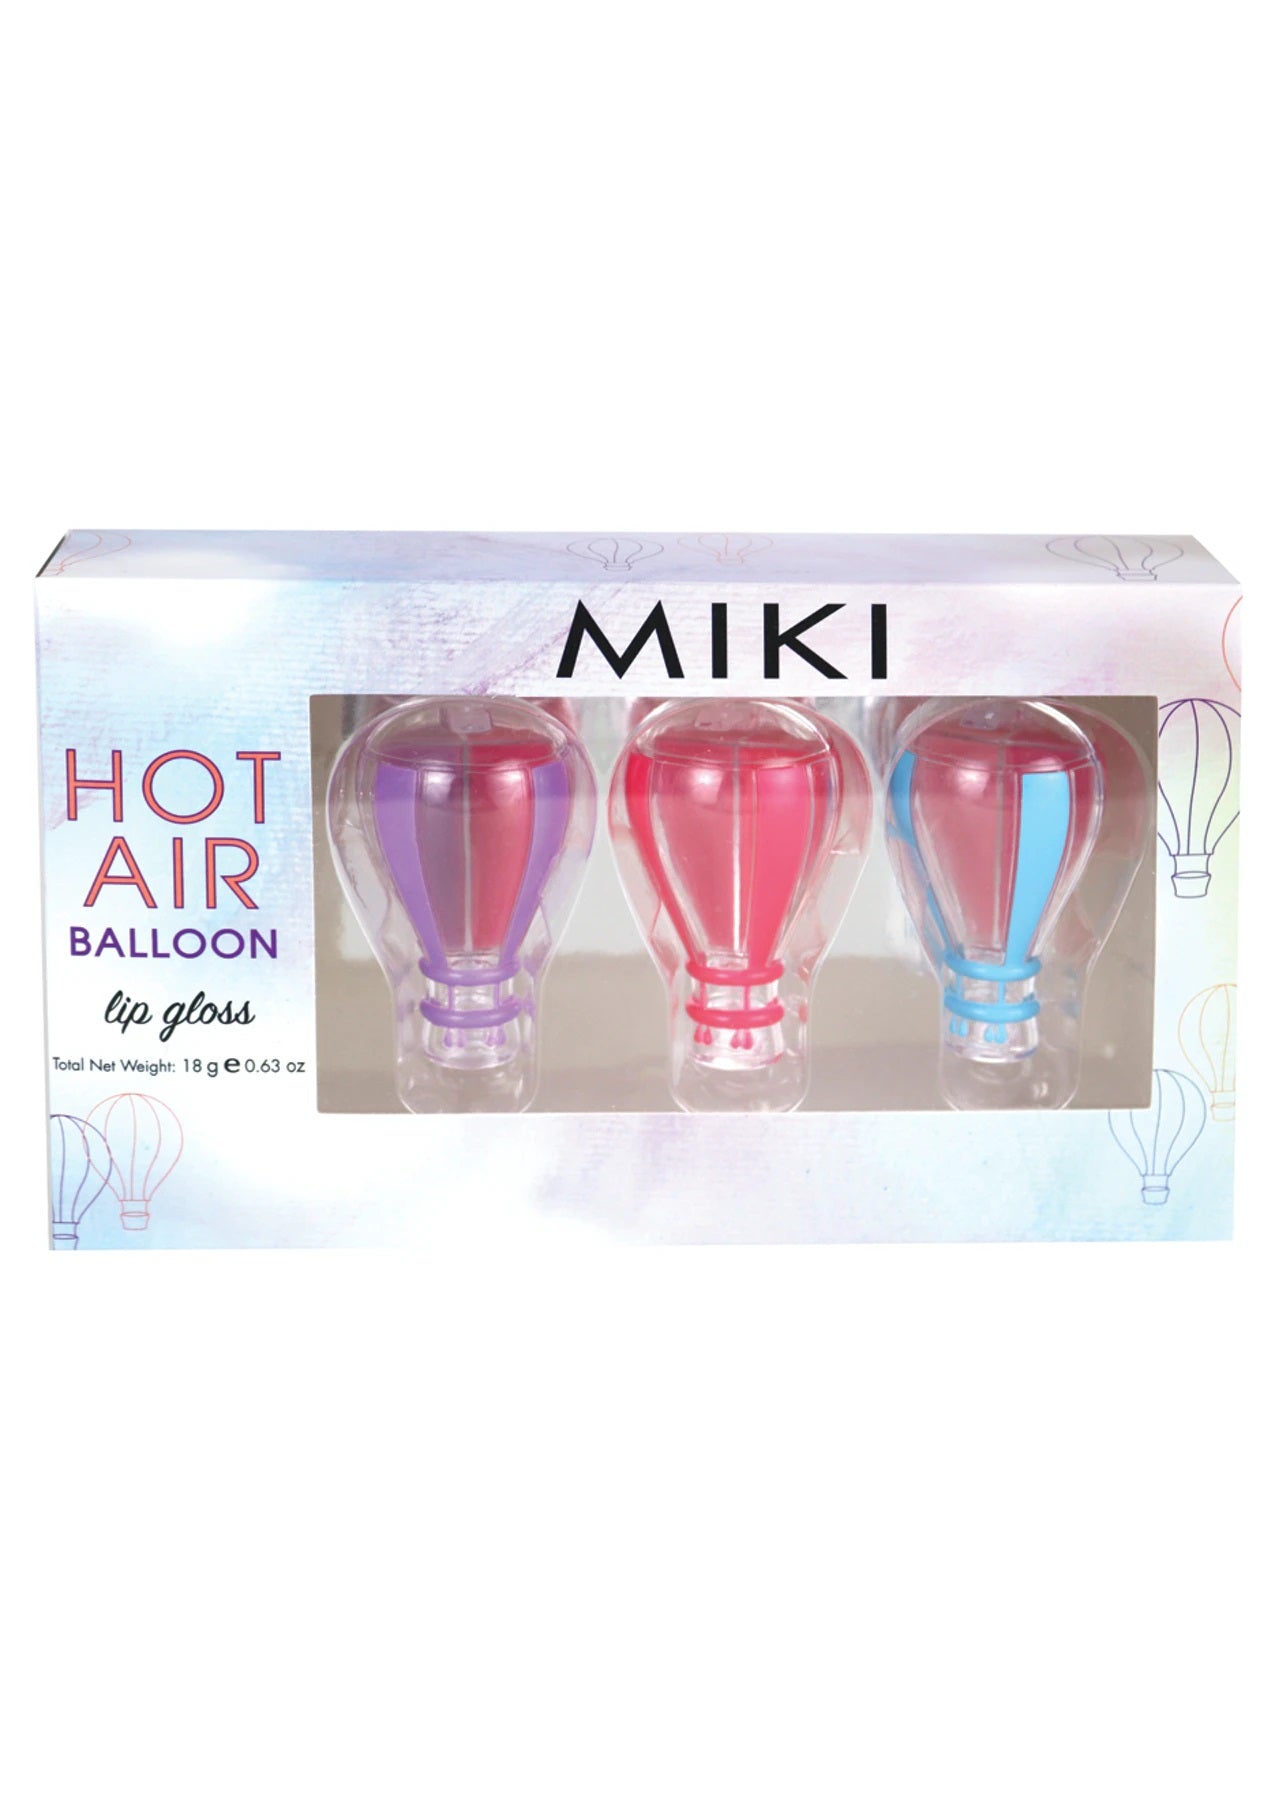 Miki Hot Air Balloon Lip Gloss